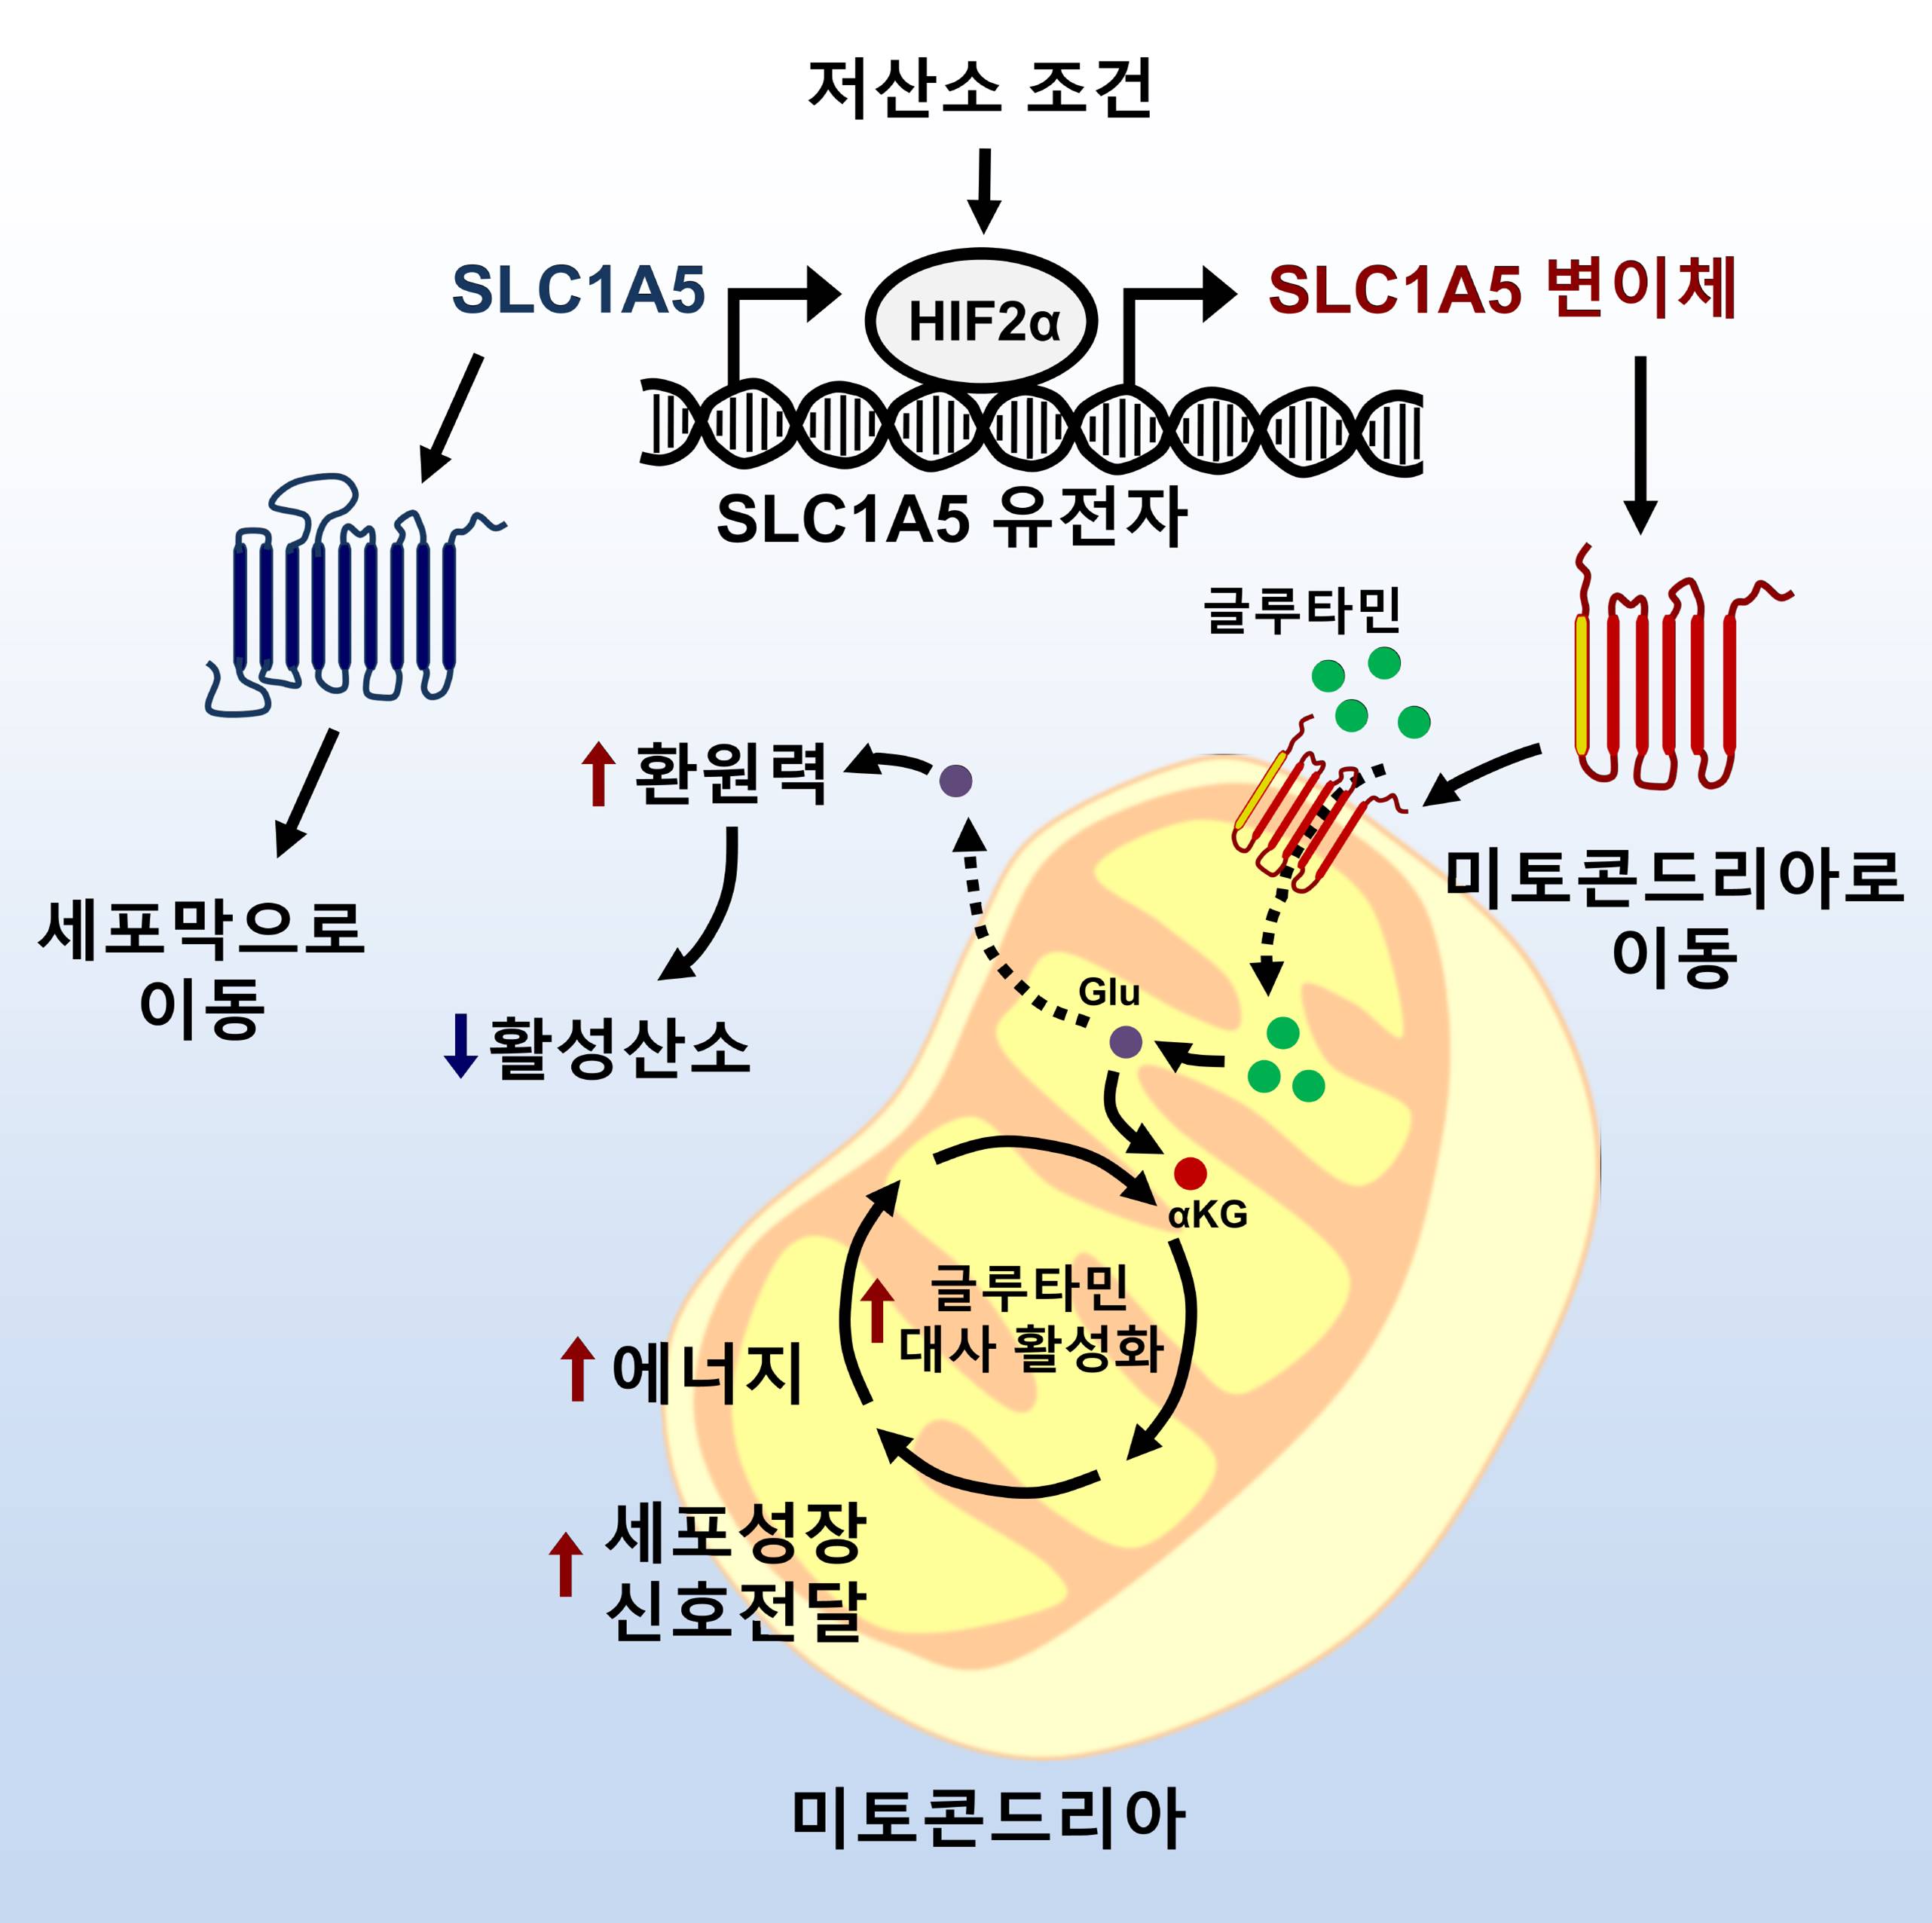 SLC1A5 유전자 변이체에 의한 미토콘드리아 글루타민 대사 메커니즘